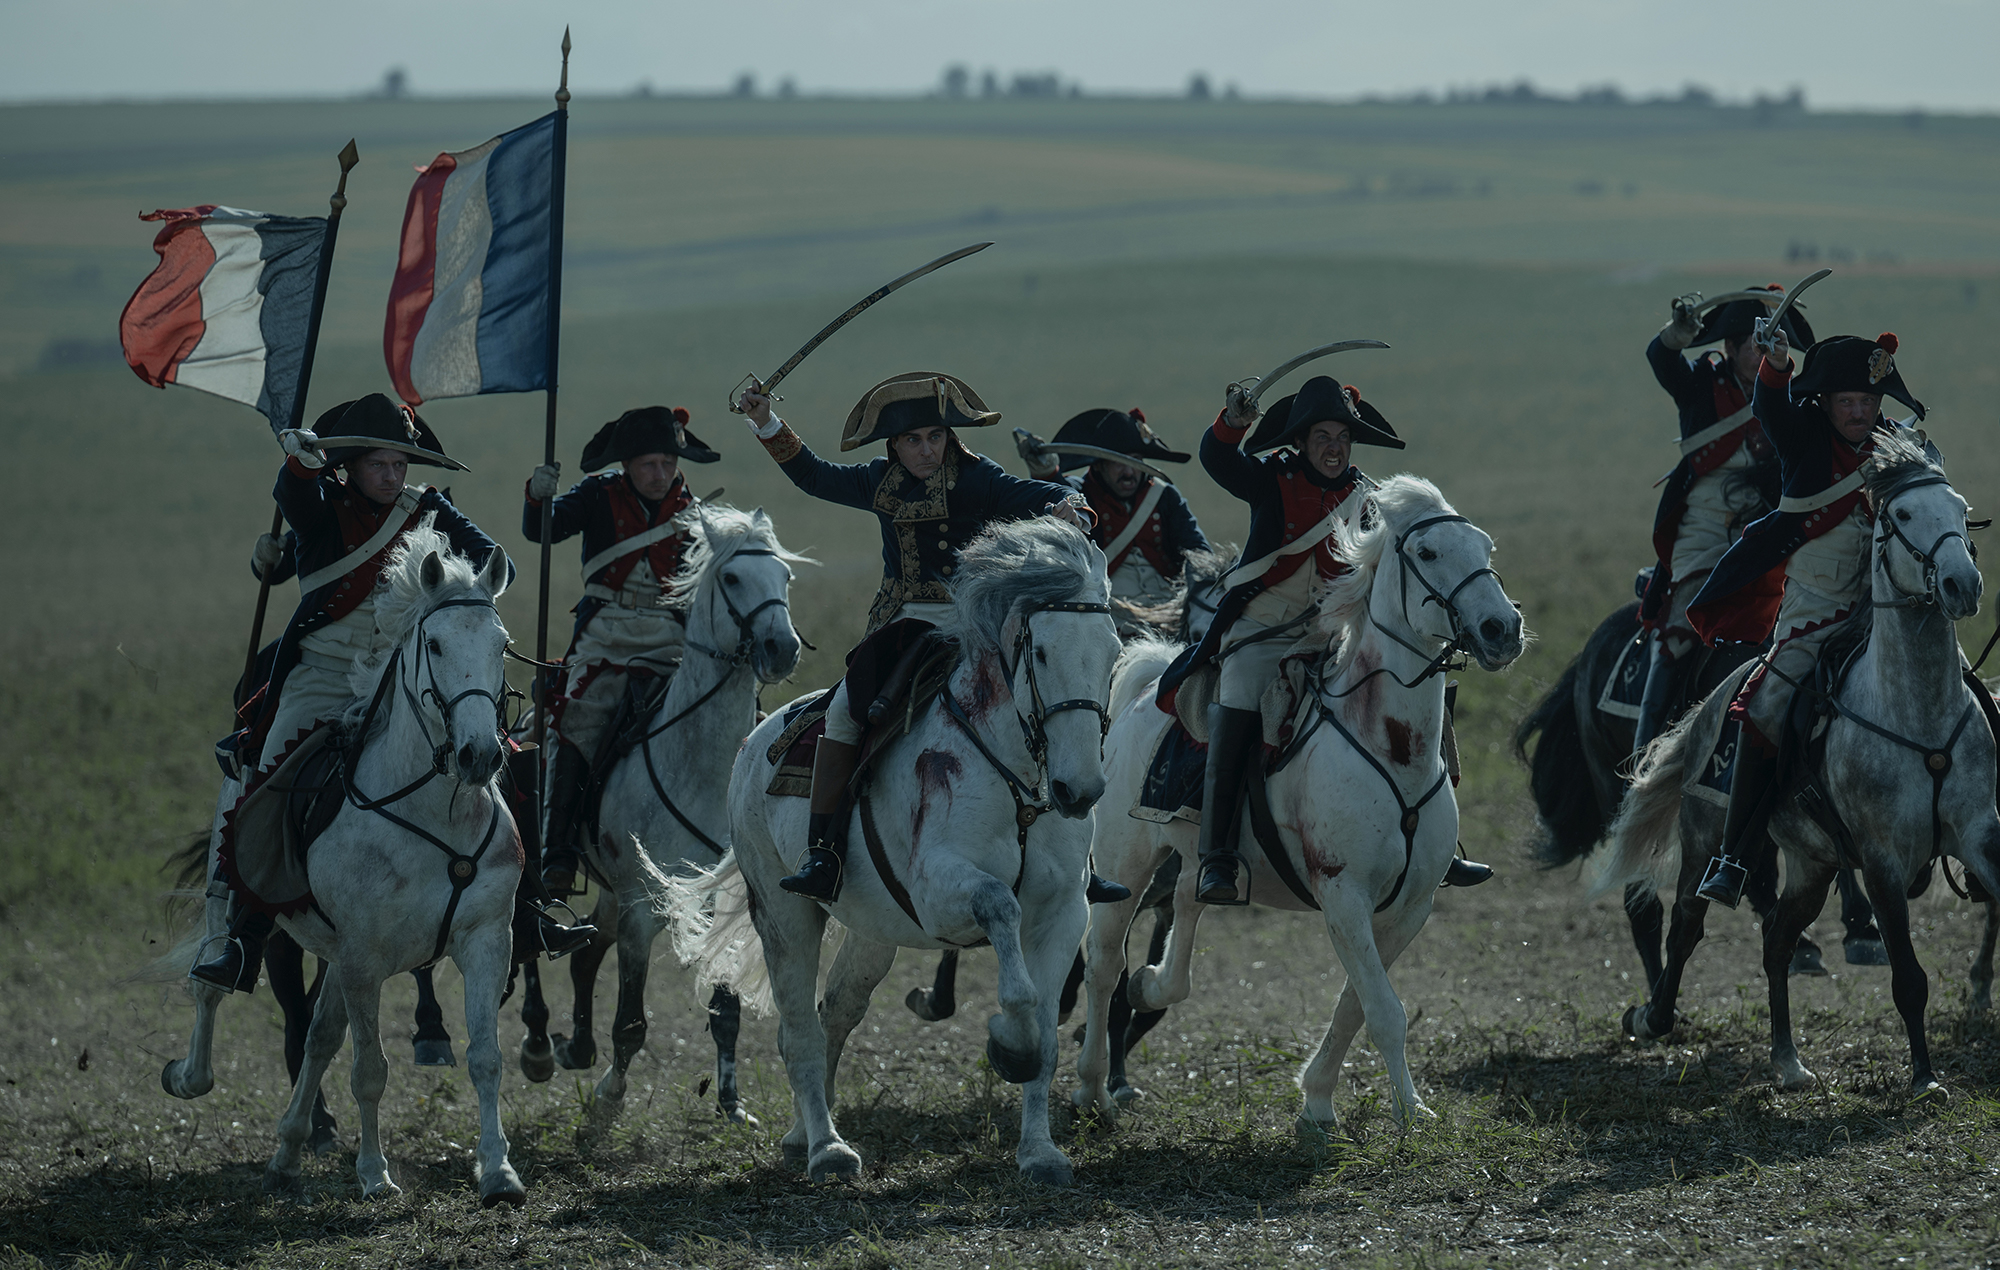 Watch Napoleon slaughter his enemies in epic battle scene